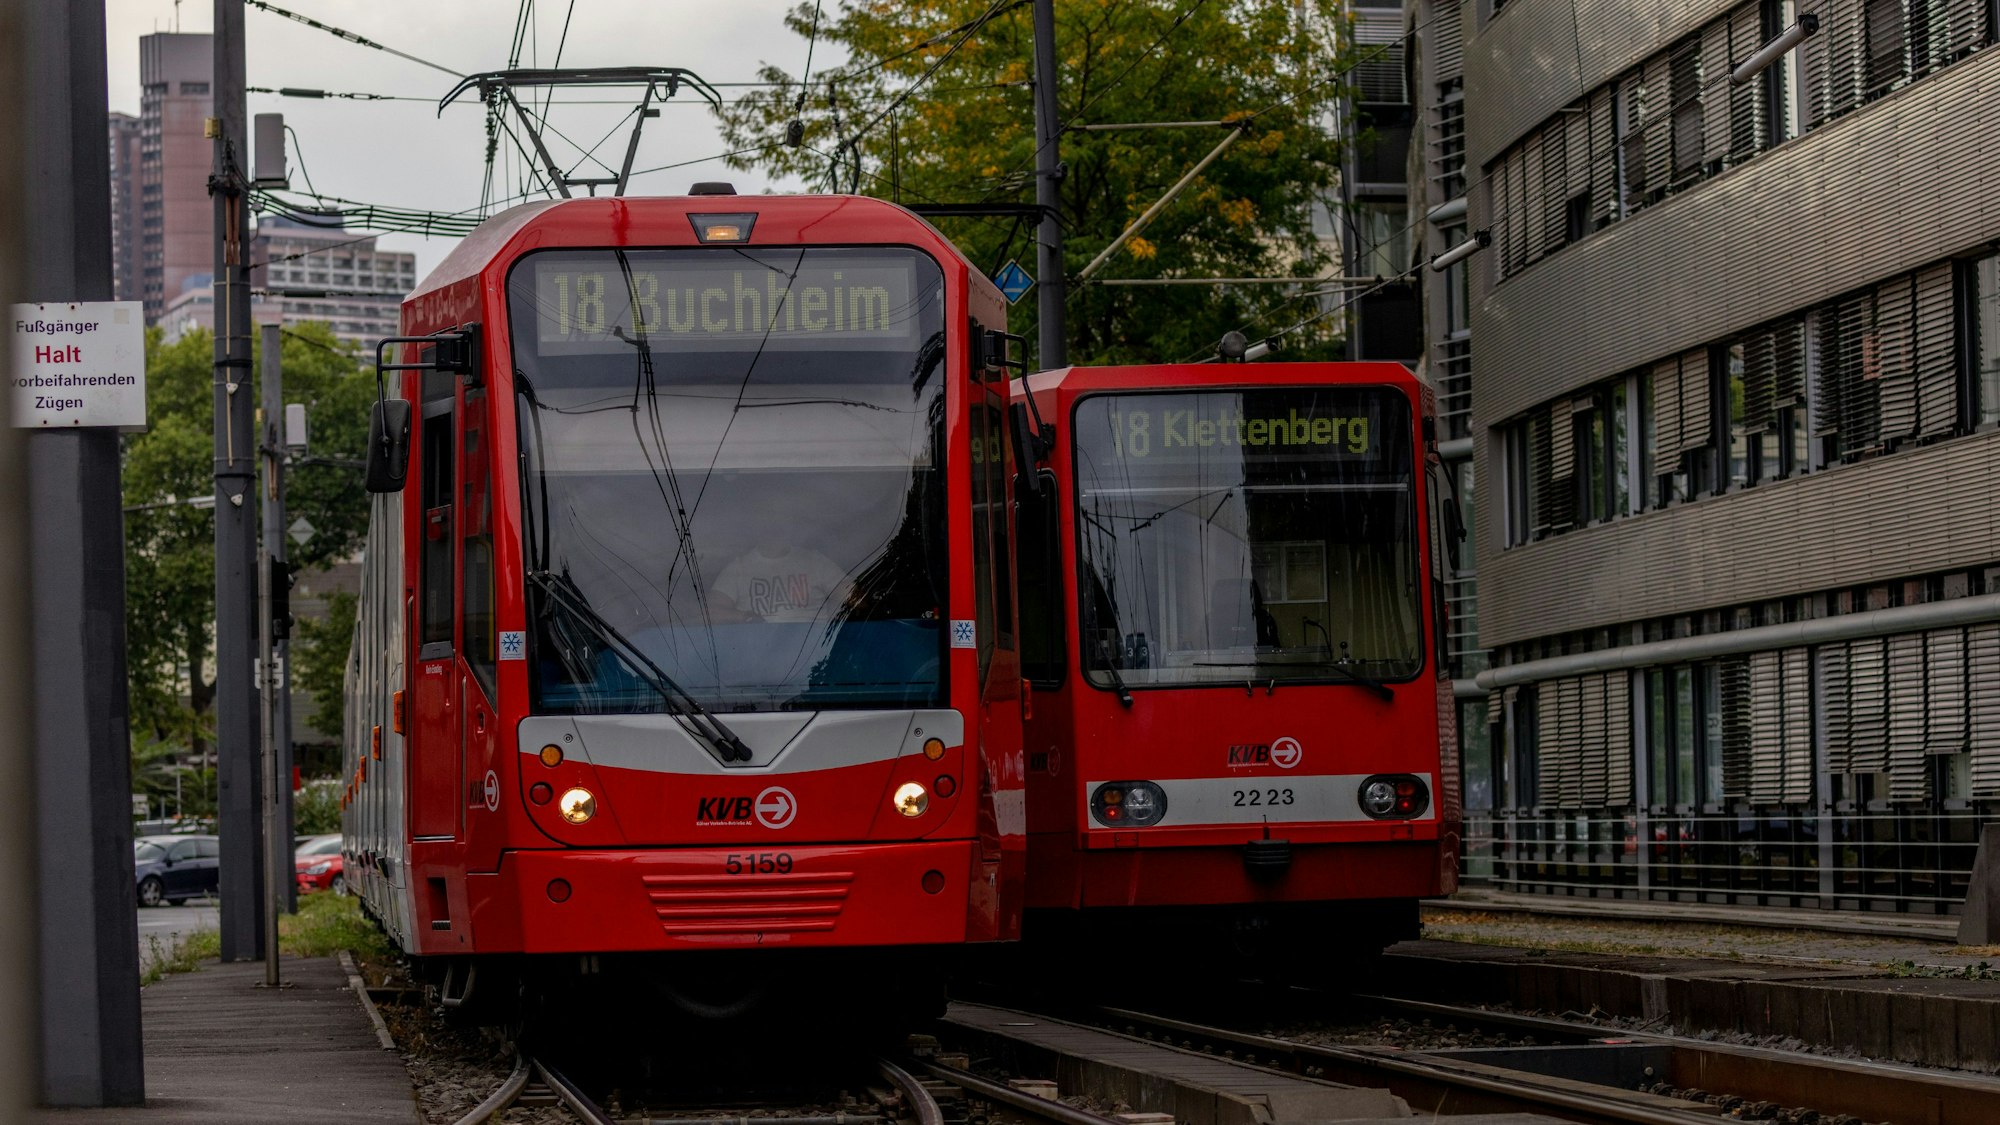 Bahnen der Kölner Verkehrs-Betriebe, hier der Linie 18, fahren auf Schienen.